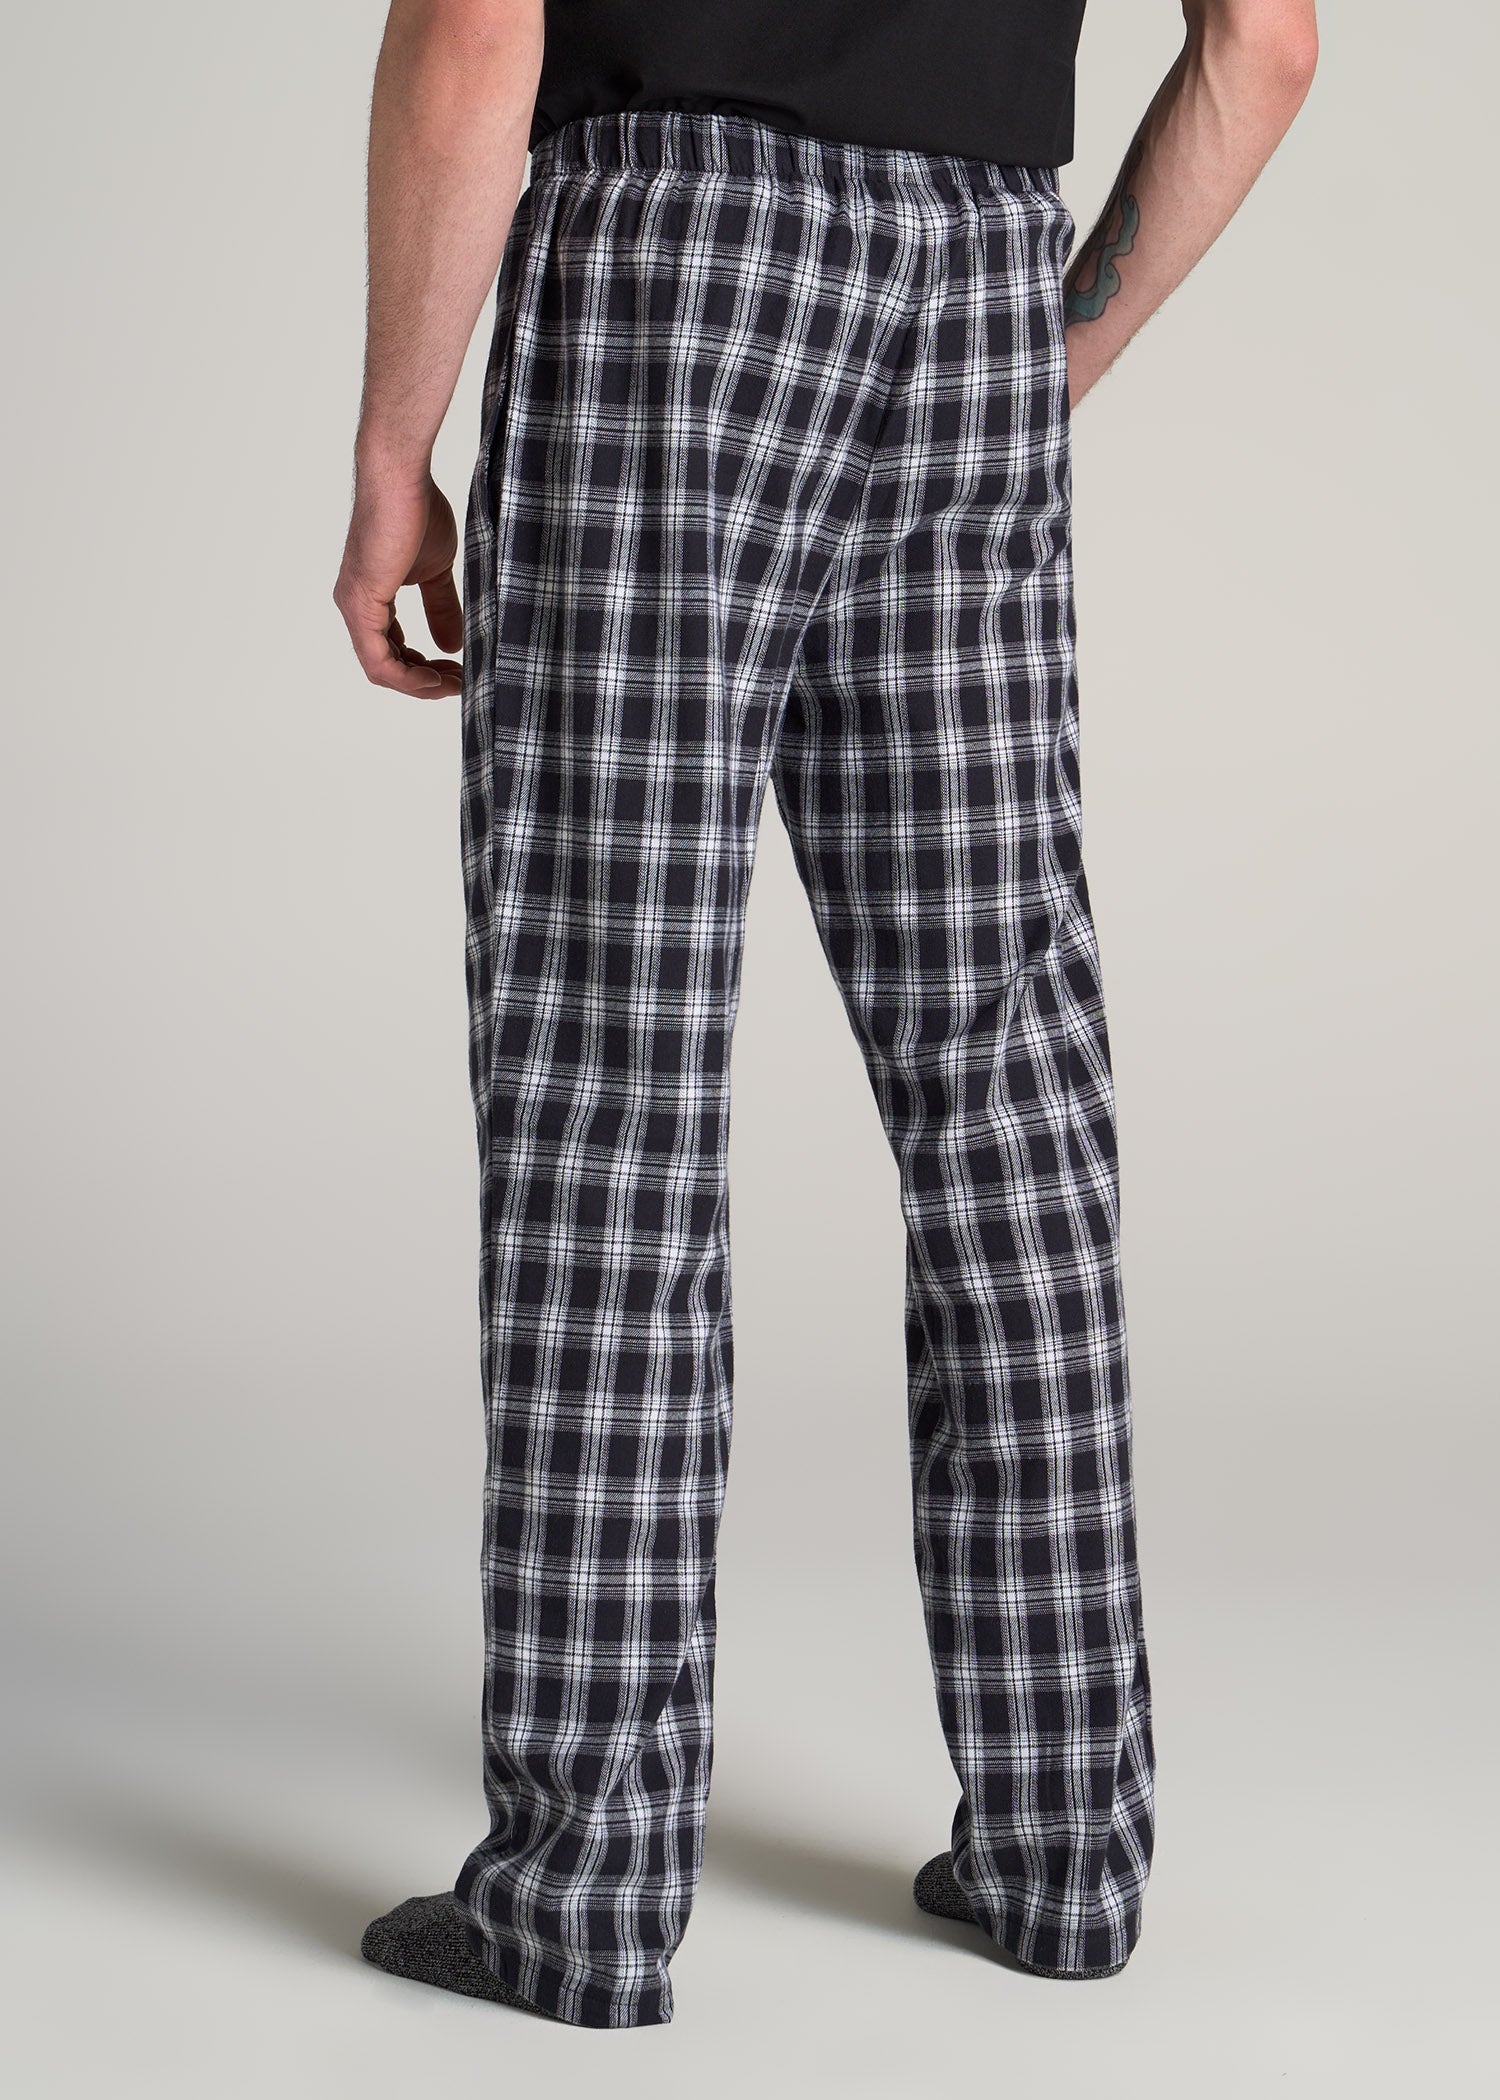 Shop Mens Pyjama Pant | Pure Cotton - White Pyjama | Ramraj Cotton